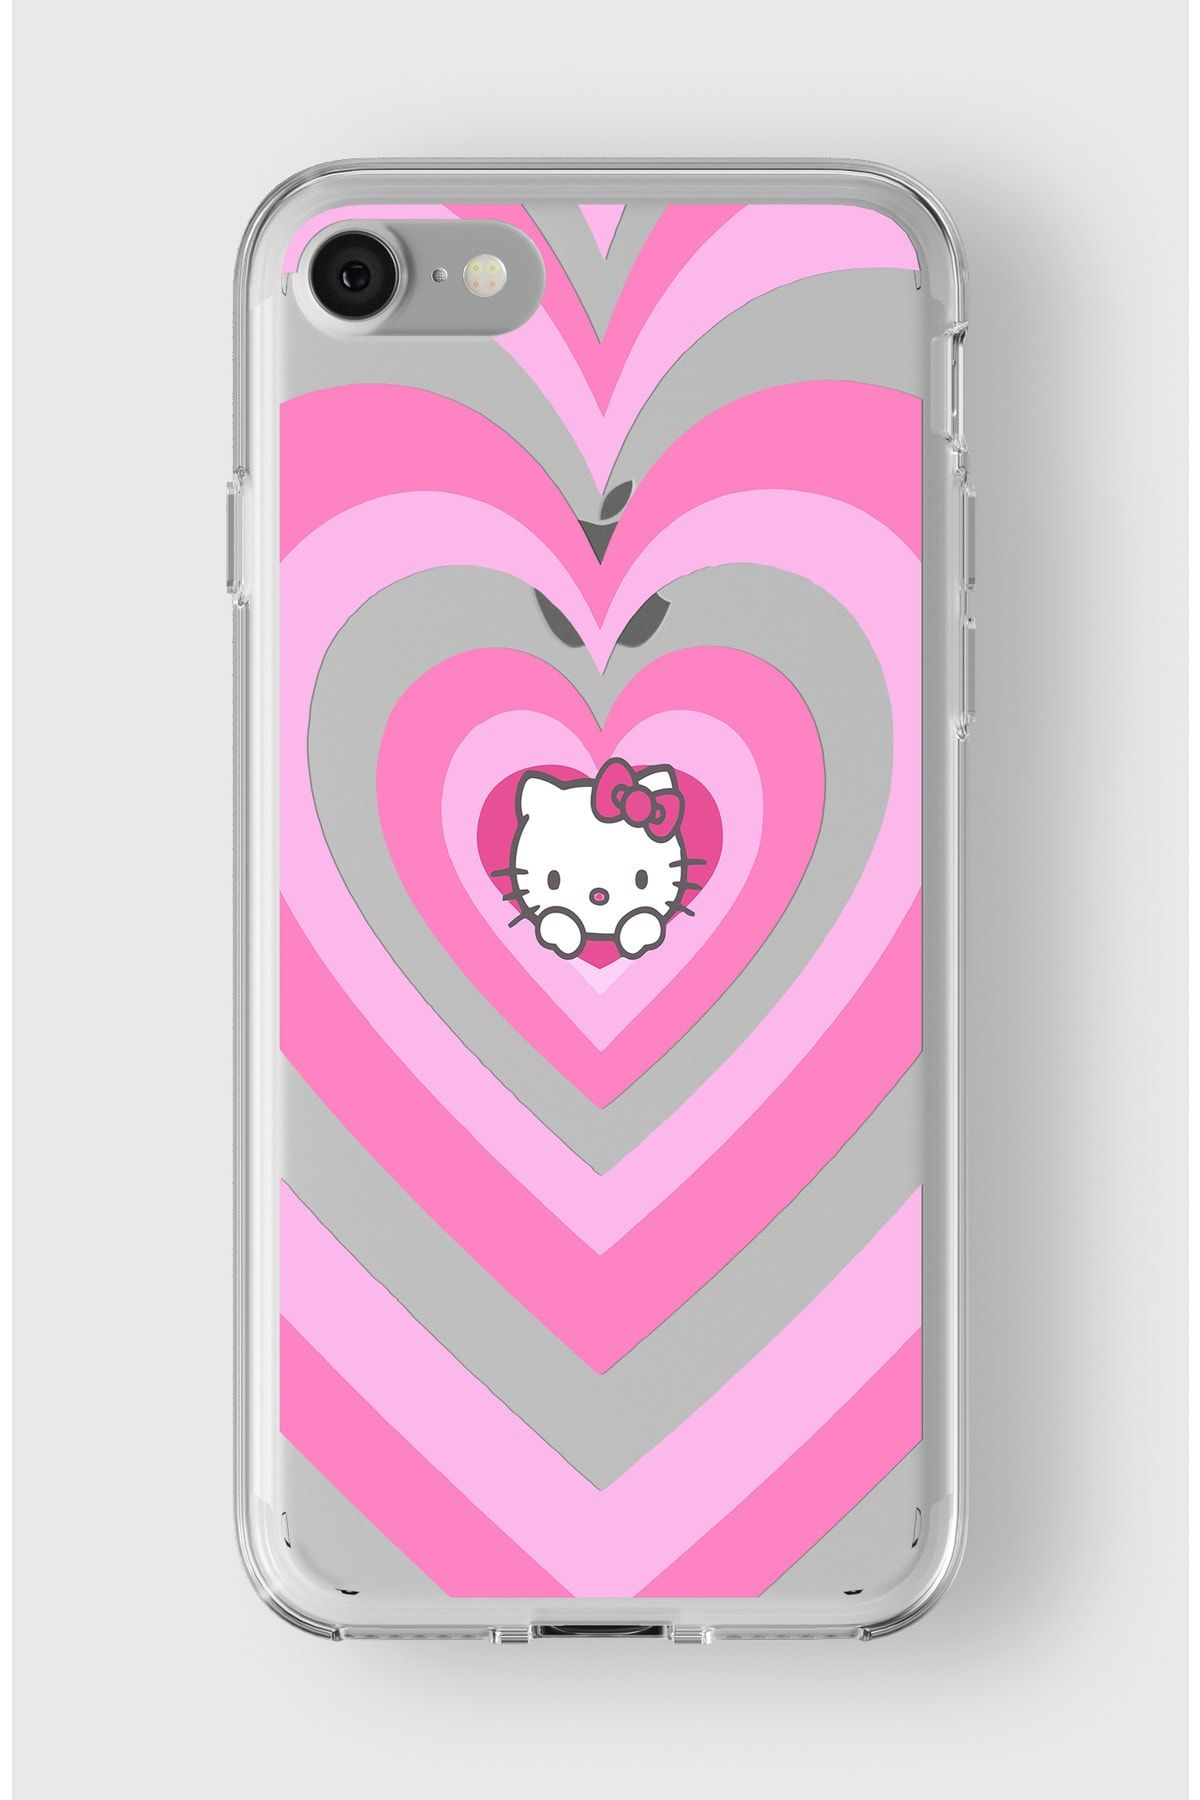 Elorakılıf Iphone 6/6s Uyumlu Kalpli Hello Kitty Tasarımlı Premium Şeffaf Kılıf